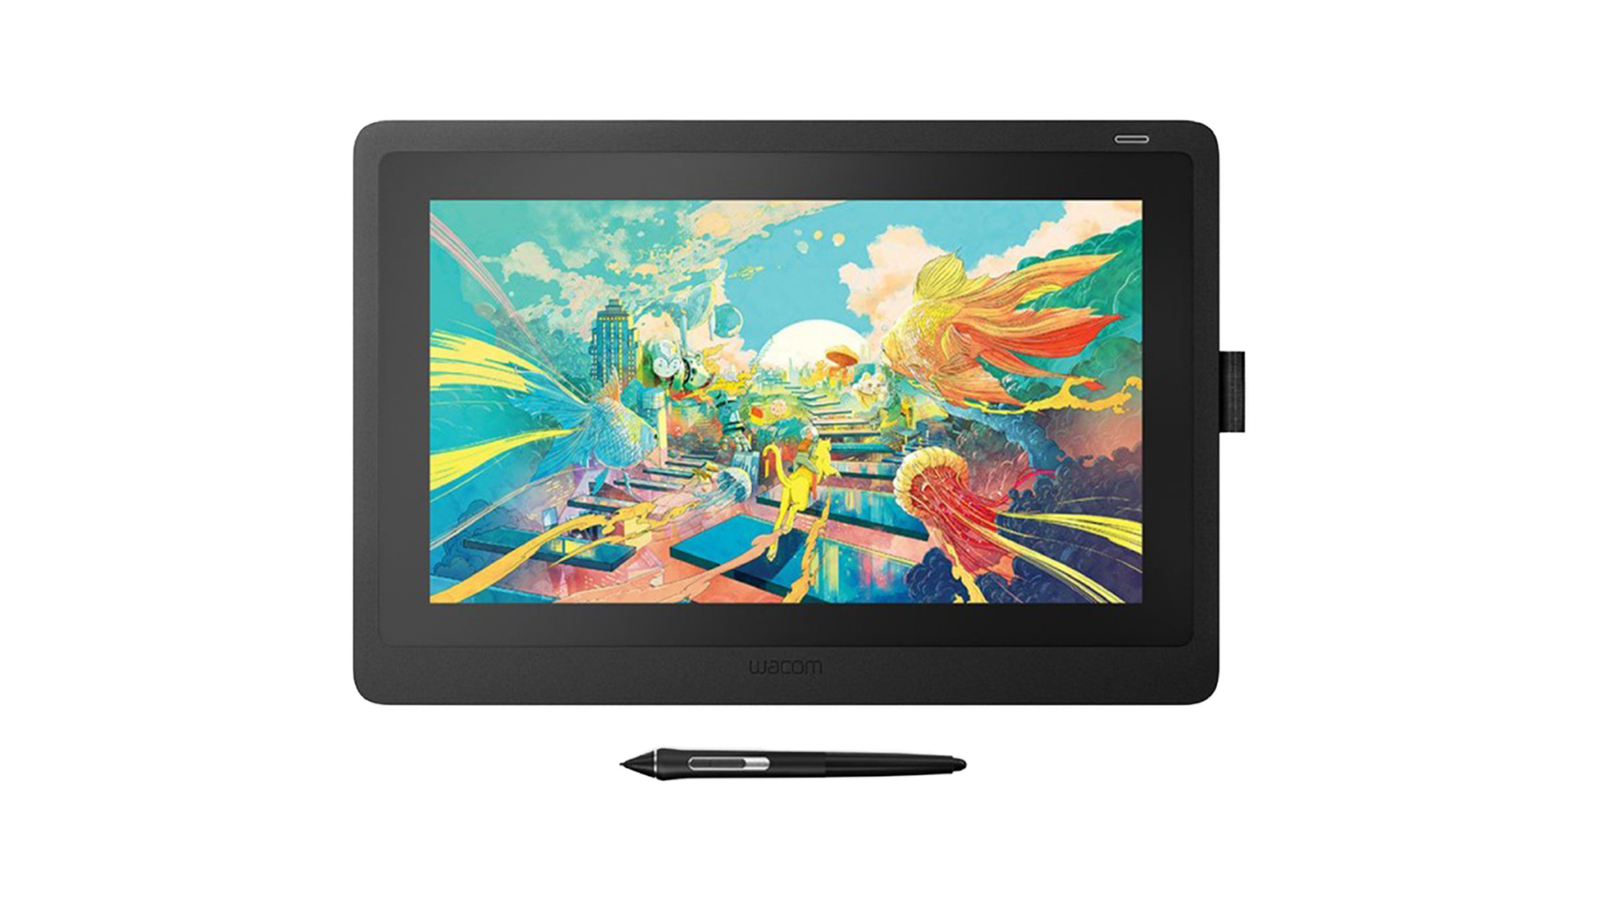 Wacom Cintiq 16 - Wacom's fantastic mid-range tablet is a mix between cost and capability.